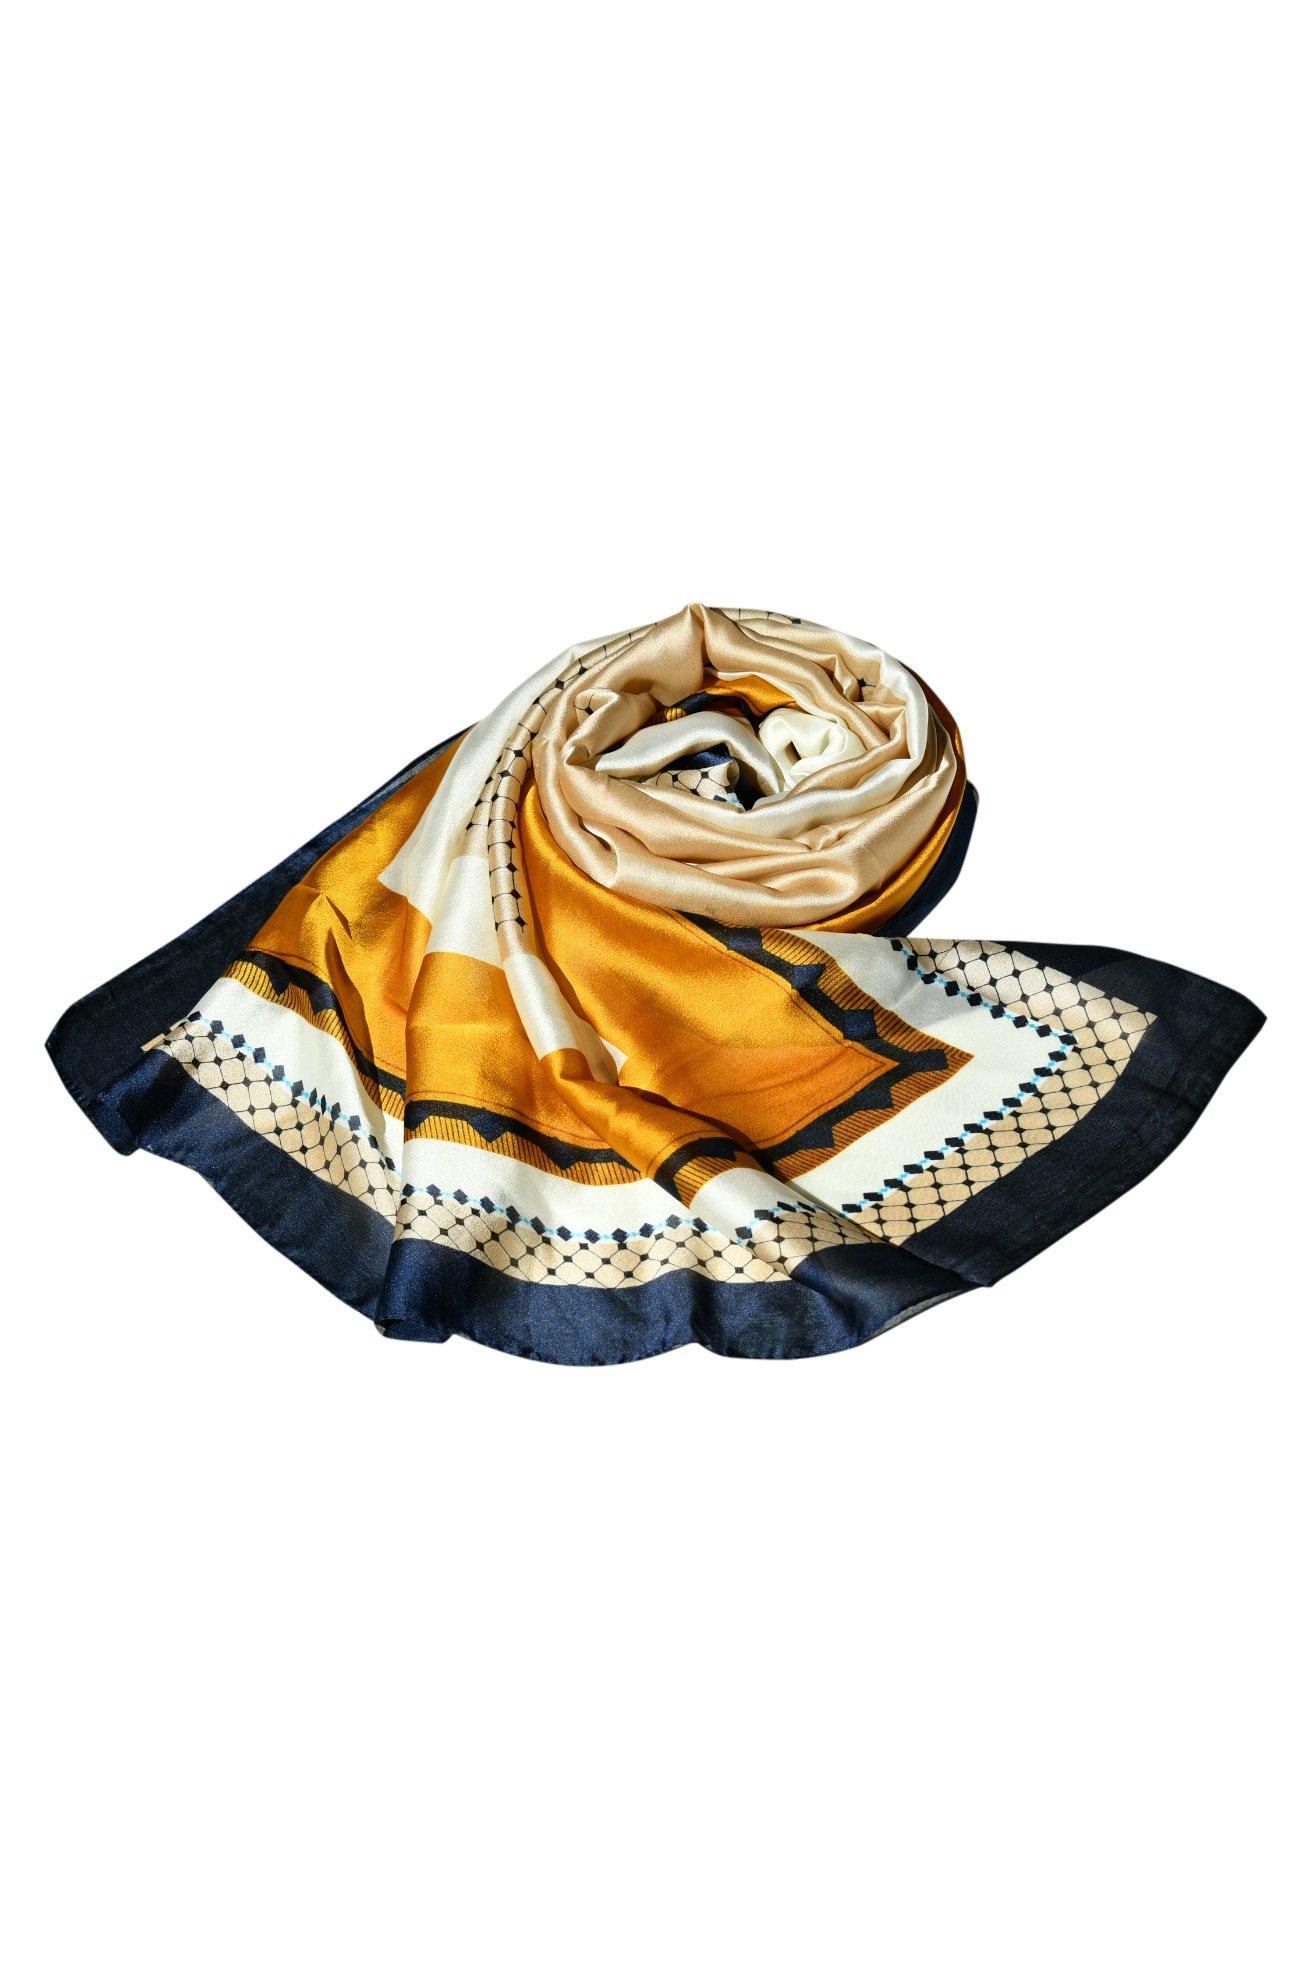 Высококачественная шаль, модельерский шелковый шарф с принтом для женщин, стильный шелковый платок, вечеринка, элегантность для любого наряда Blue Chilli, мультиколор suzhou деловой подарок шарф из шелка тутового шелкопряда женский шелковый шарф с вышивкой магнолия шаль в этническом стиле шелк сучжоу